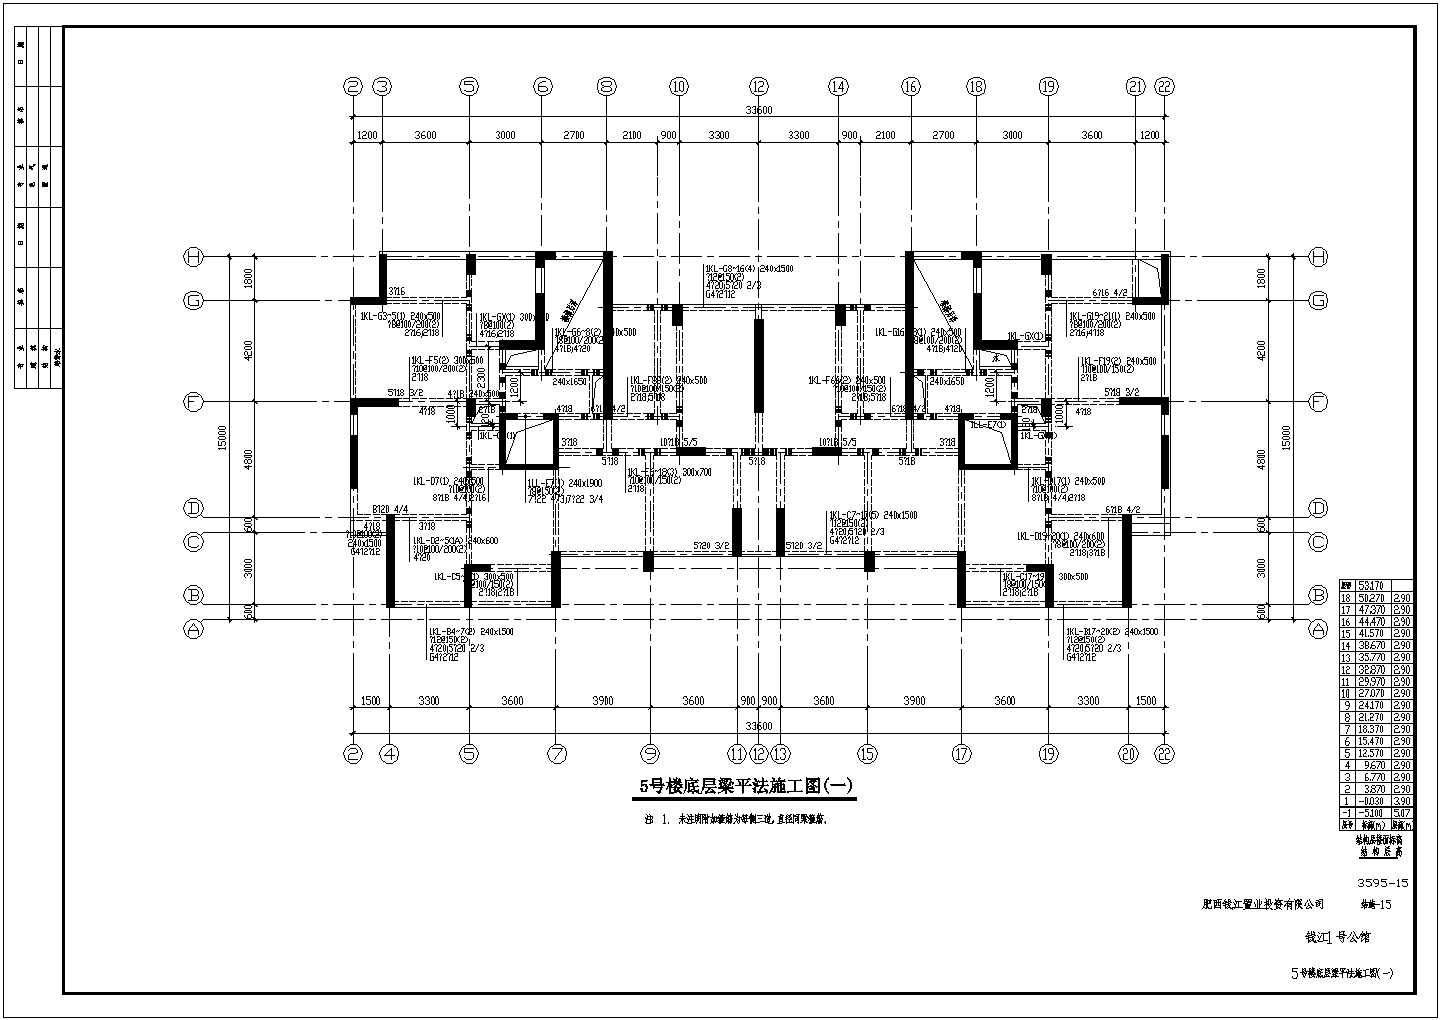 省院18层经典住宅纯剪力墙结构配筋图